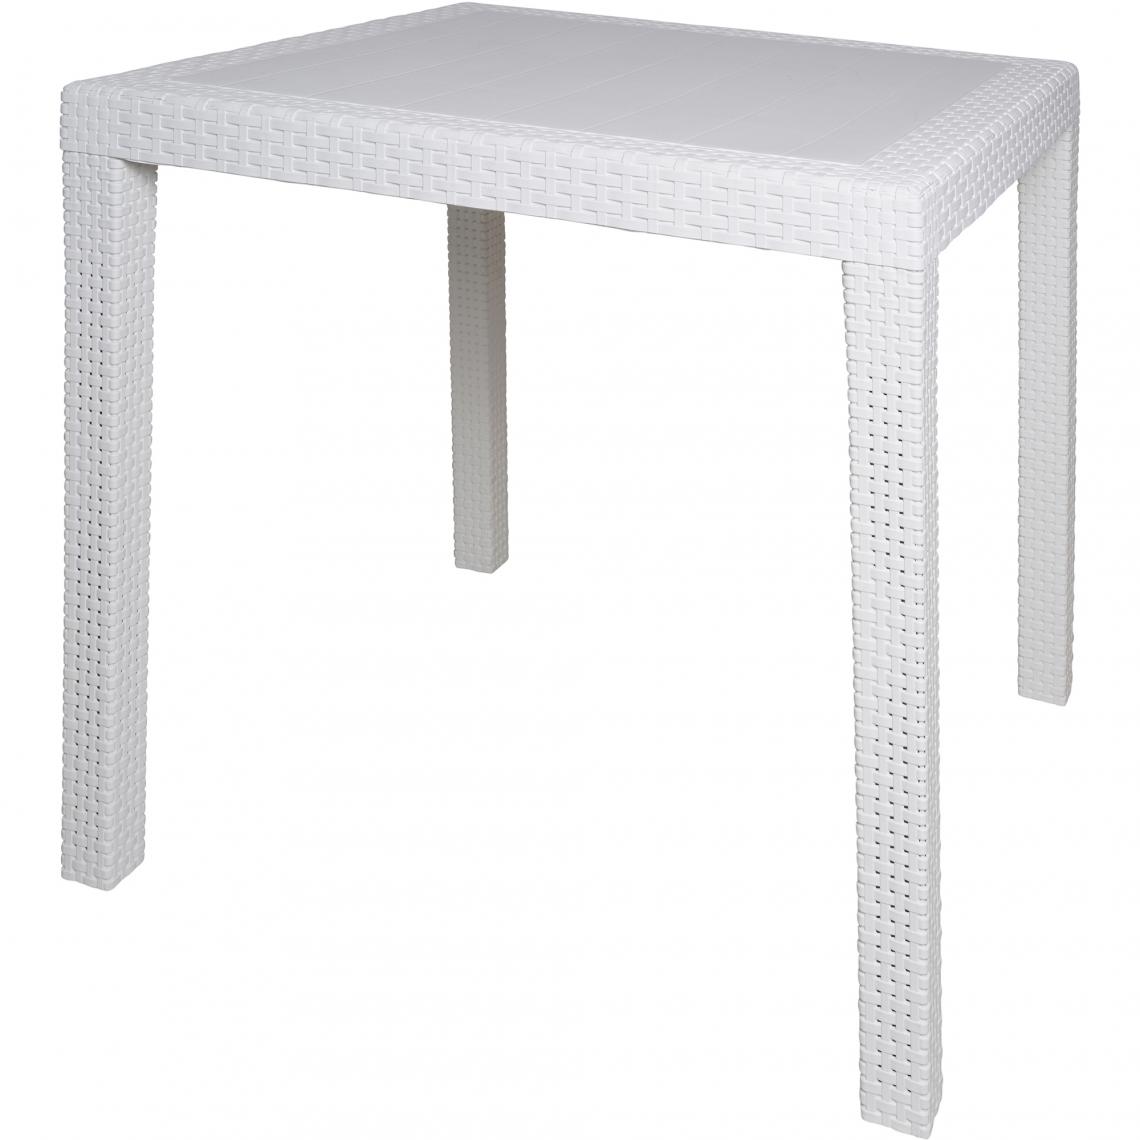 Alter - Table d'extérieur carrée, structure en résine dure effet rotin, Made in Italy, 80 x 80 x 72 cm, couleur Blanc - Tables à manger